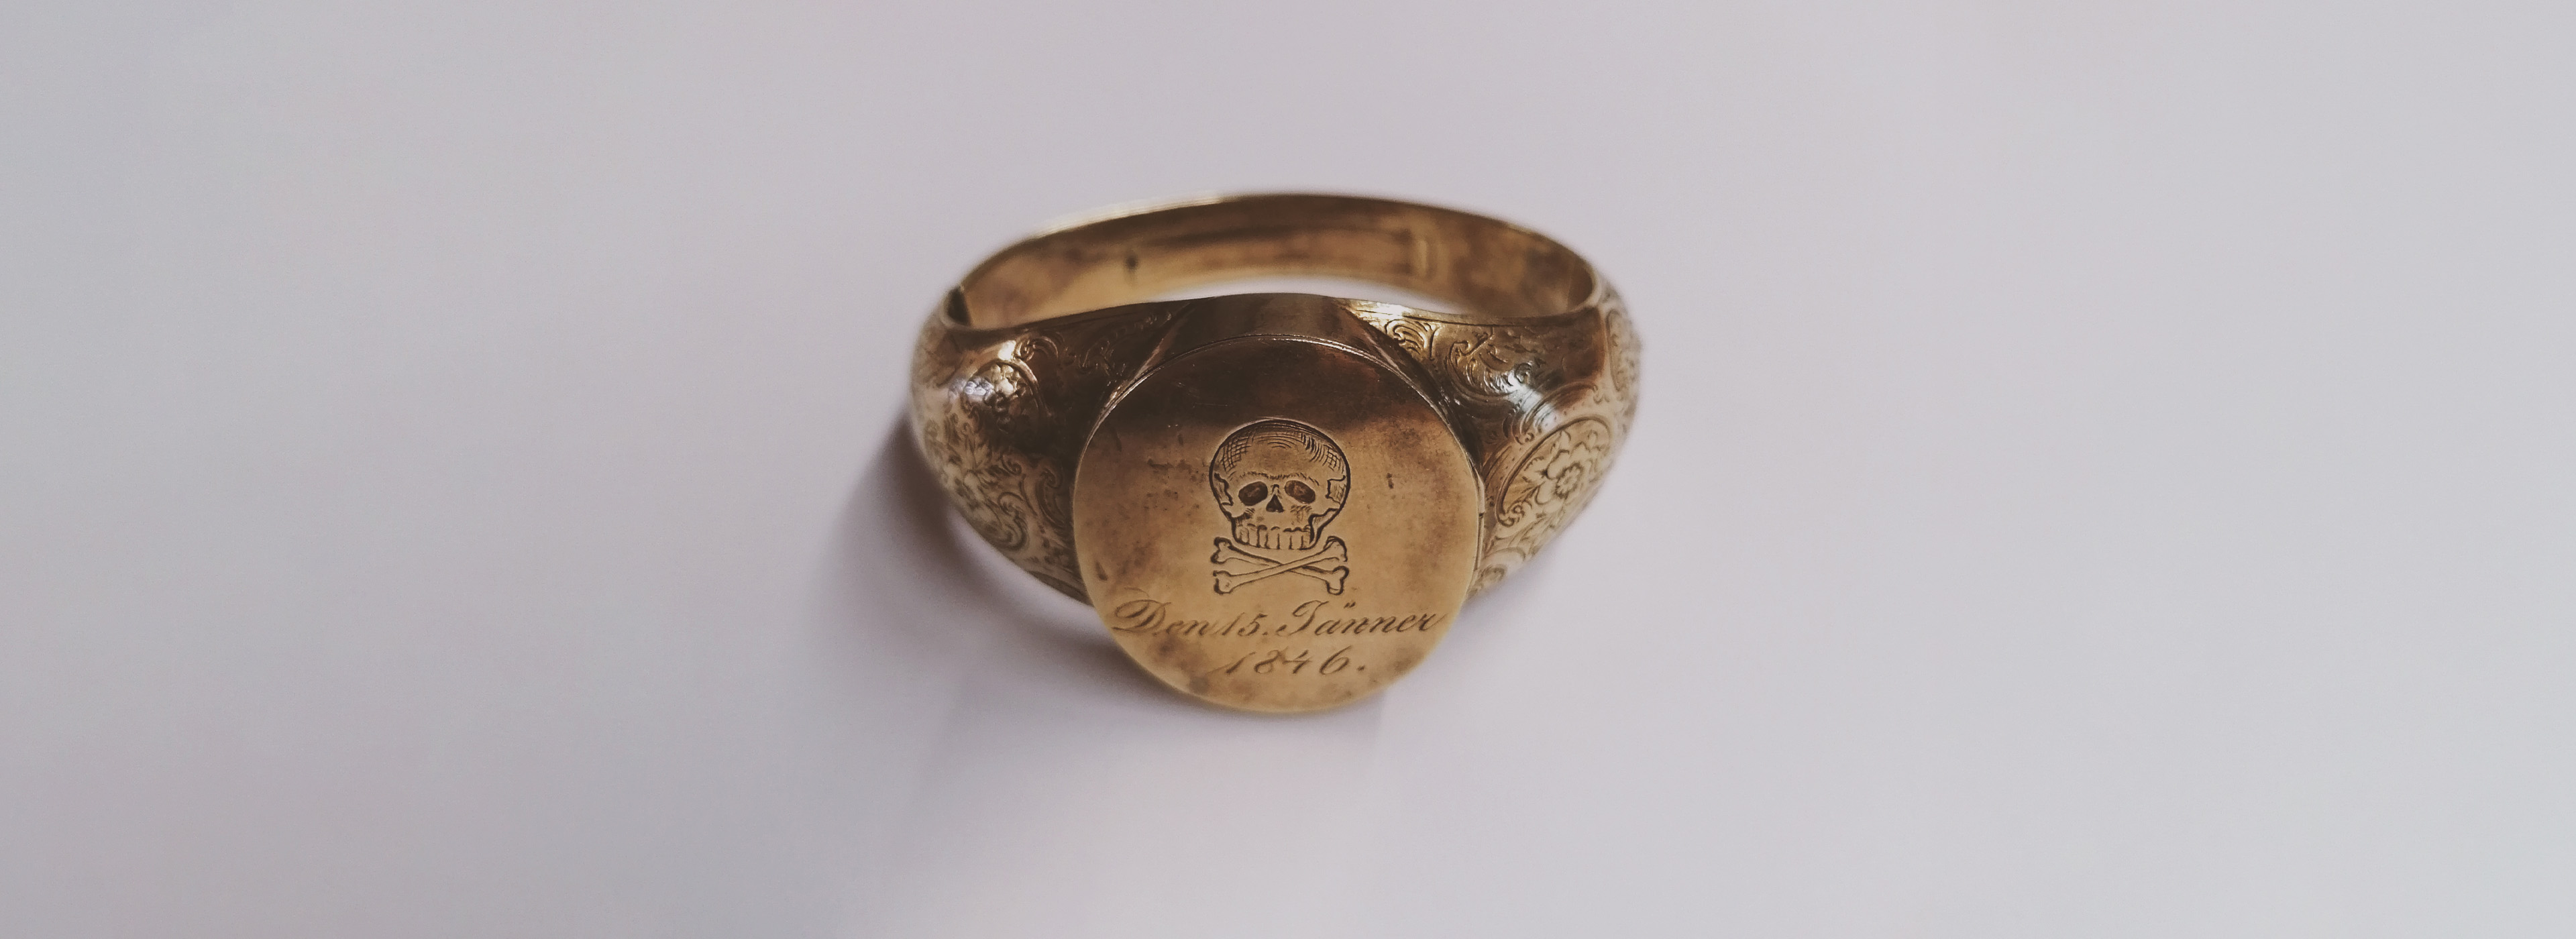 Pirátsky prsteň (zbierkový predmet Múzea Spiša)